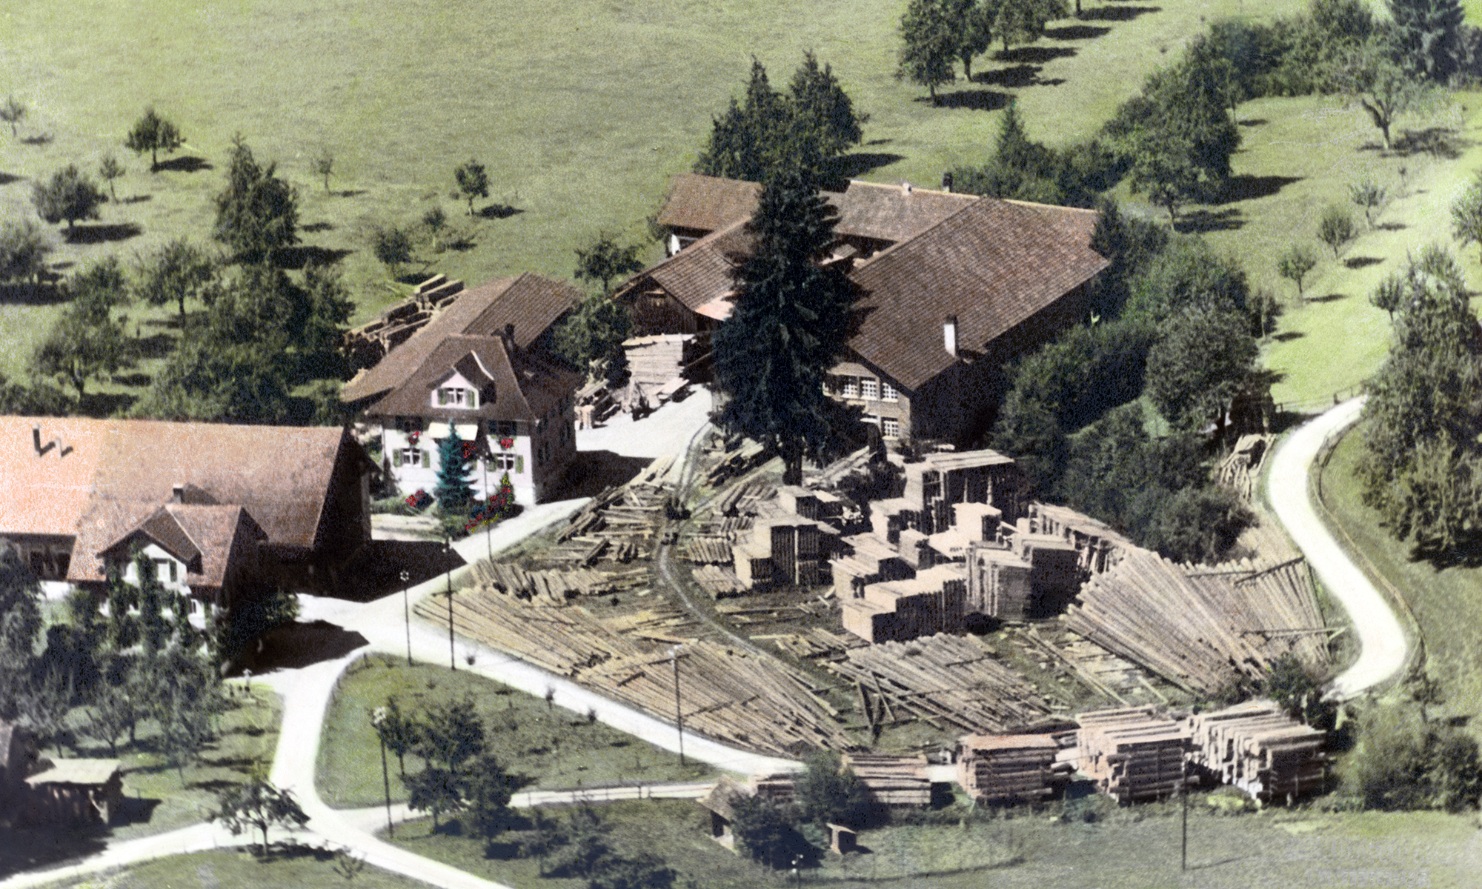 Aerial view of Erlenhof in 1950